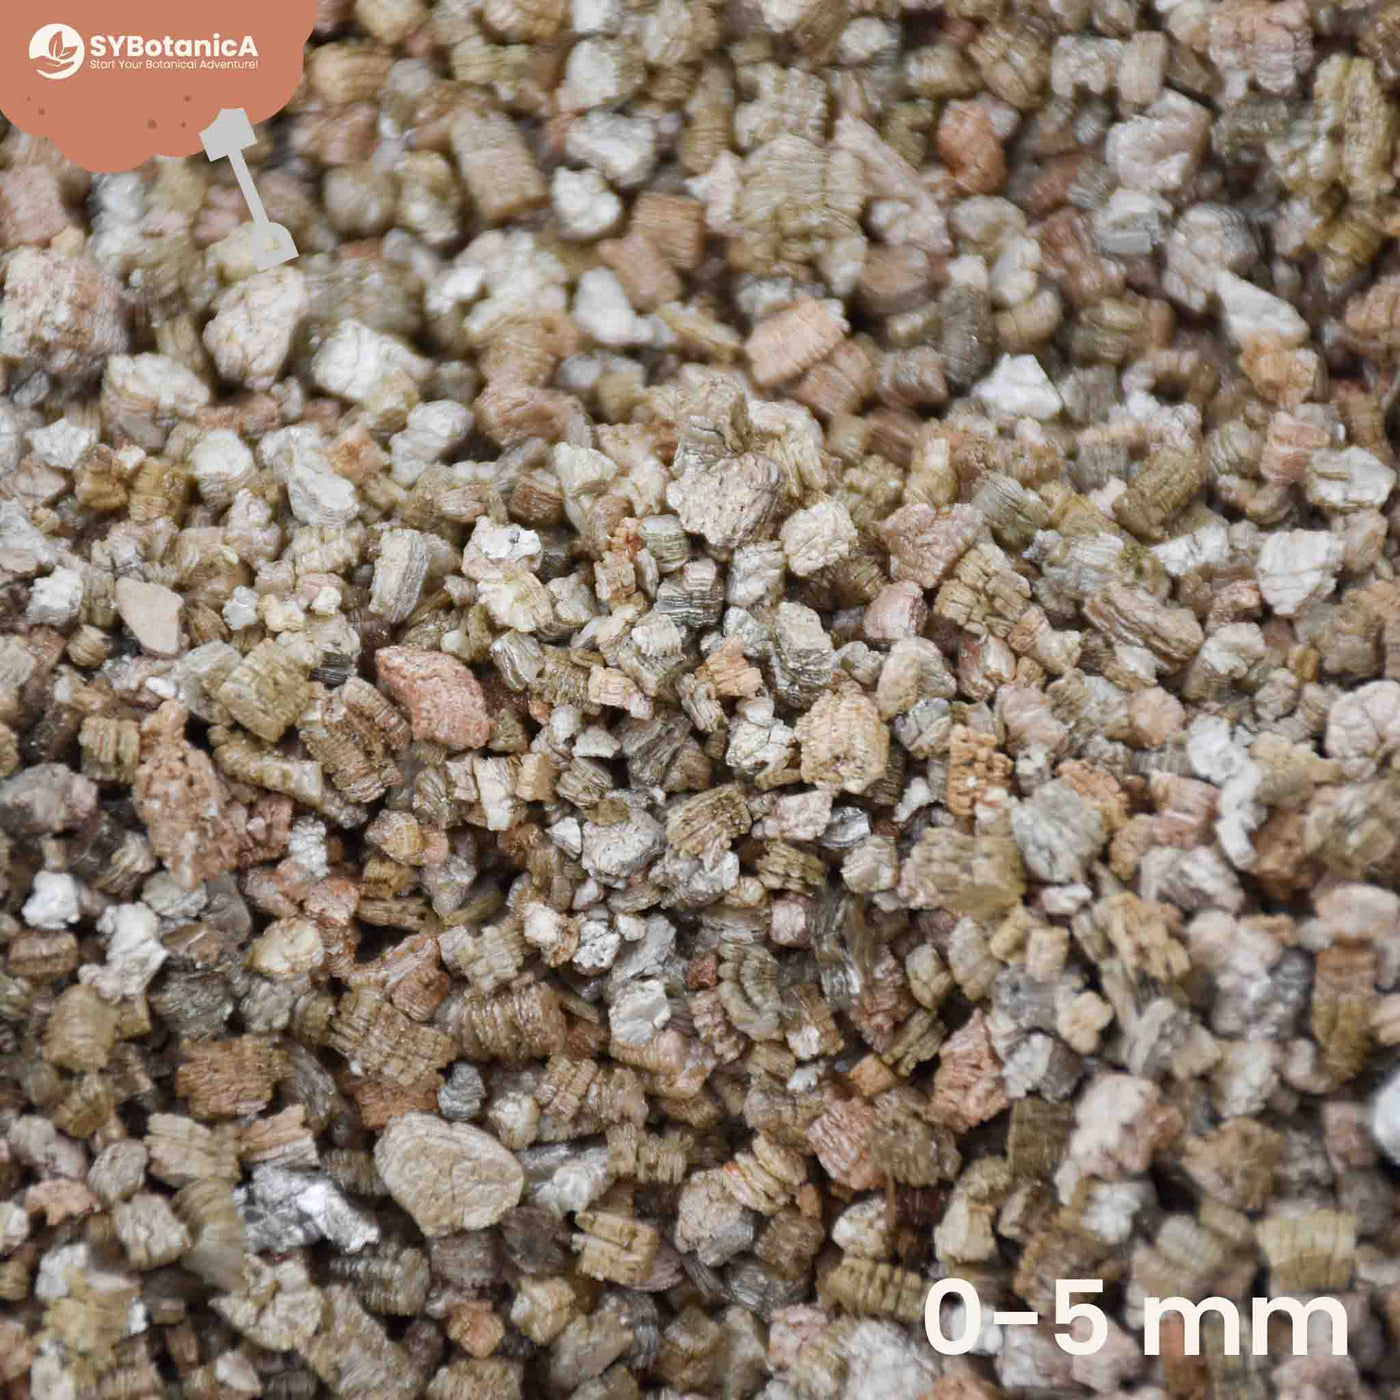 Bettergrow Vermiculite - 3 ltr - MyPalmShop